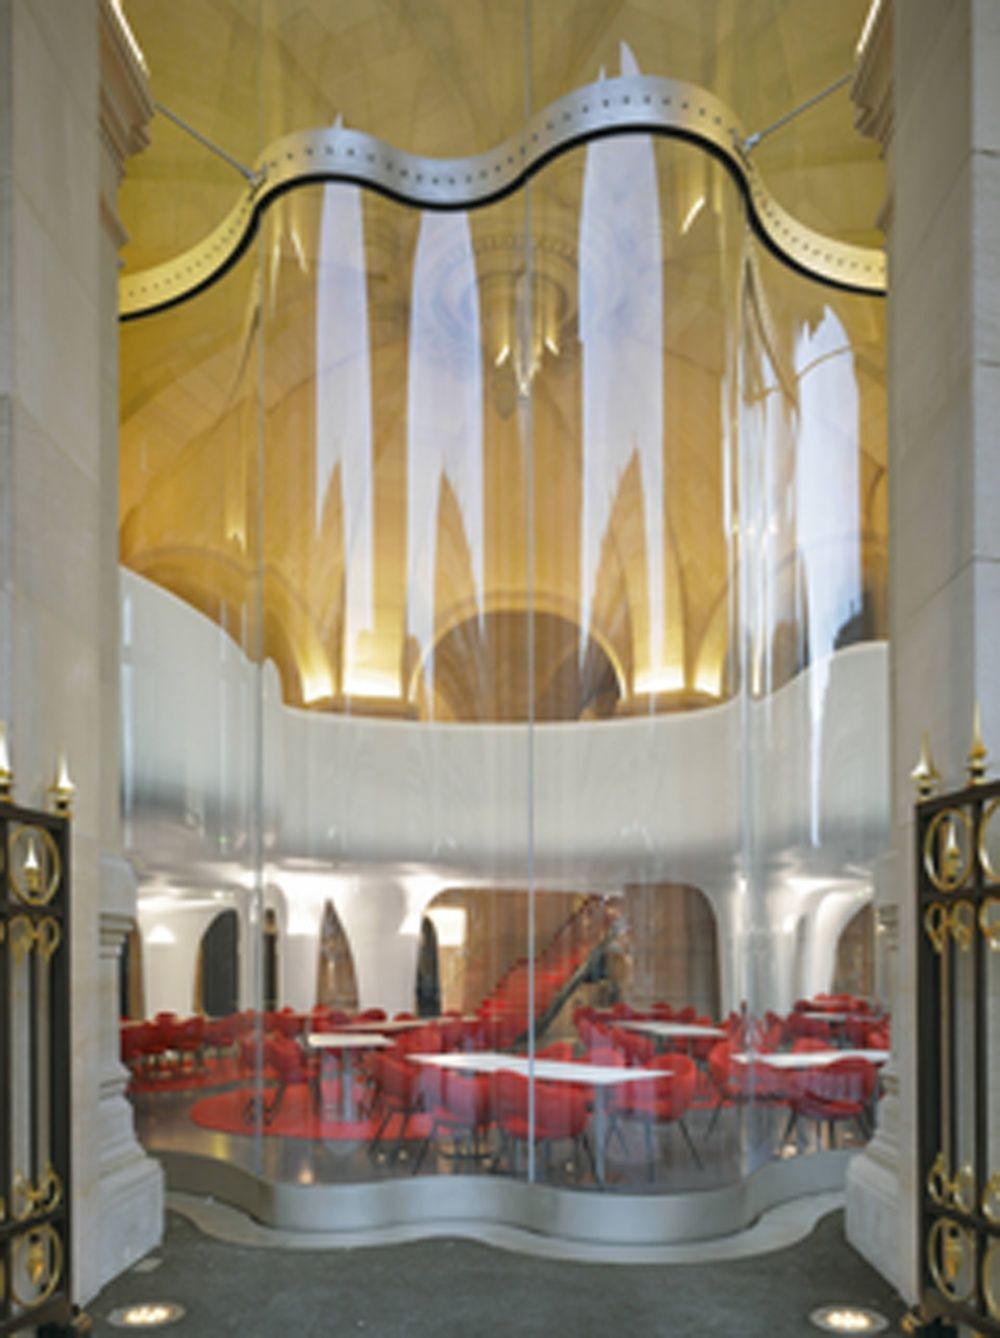 Dialogue de courbes en verre et staff pour la brasserie de l'Opéra Garnier